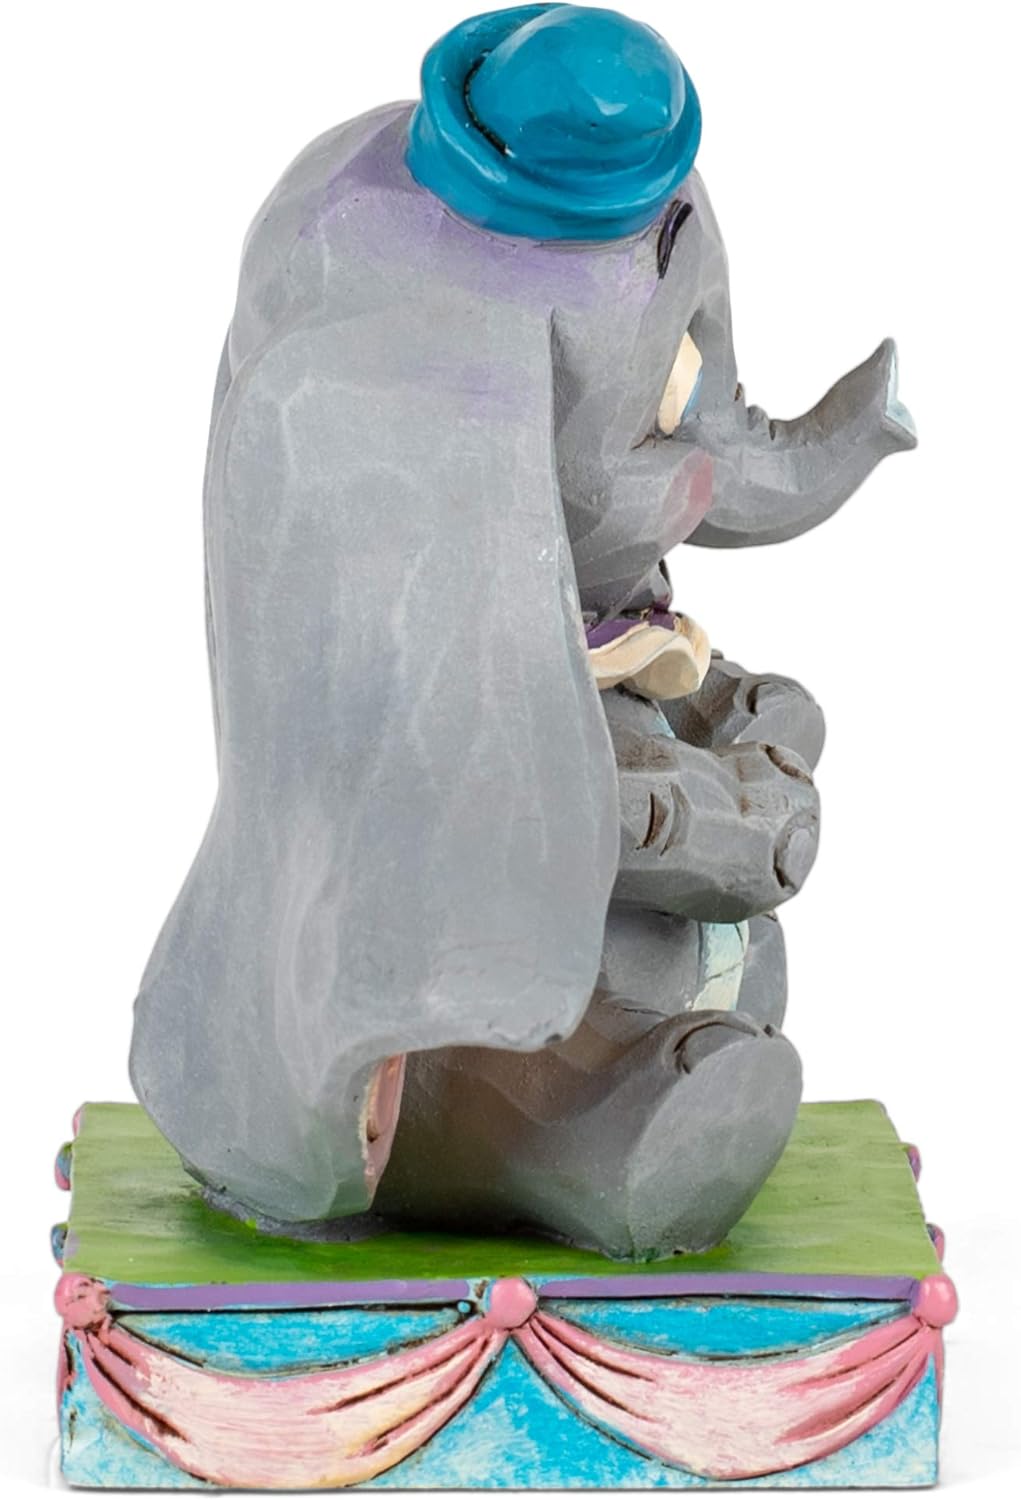 Baby Mine (Dumbo Figure)